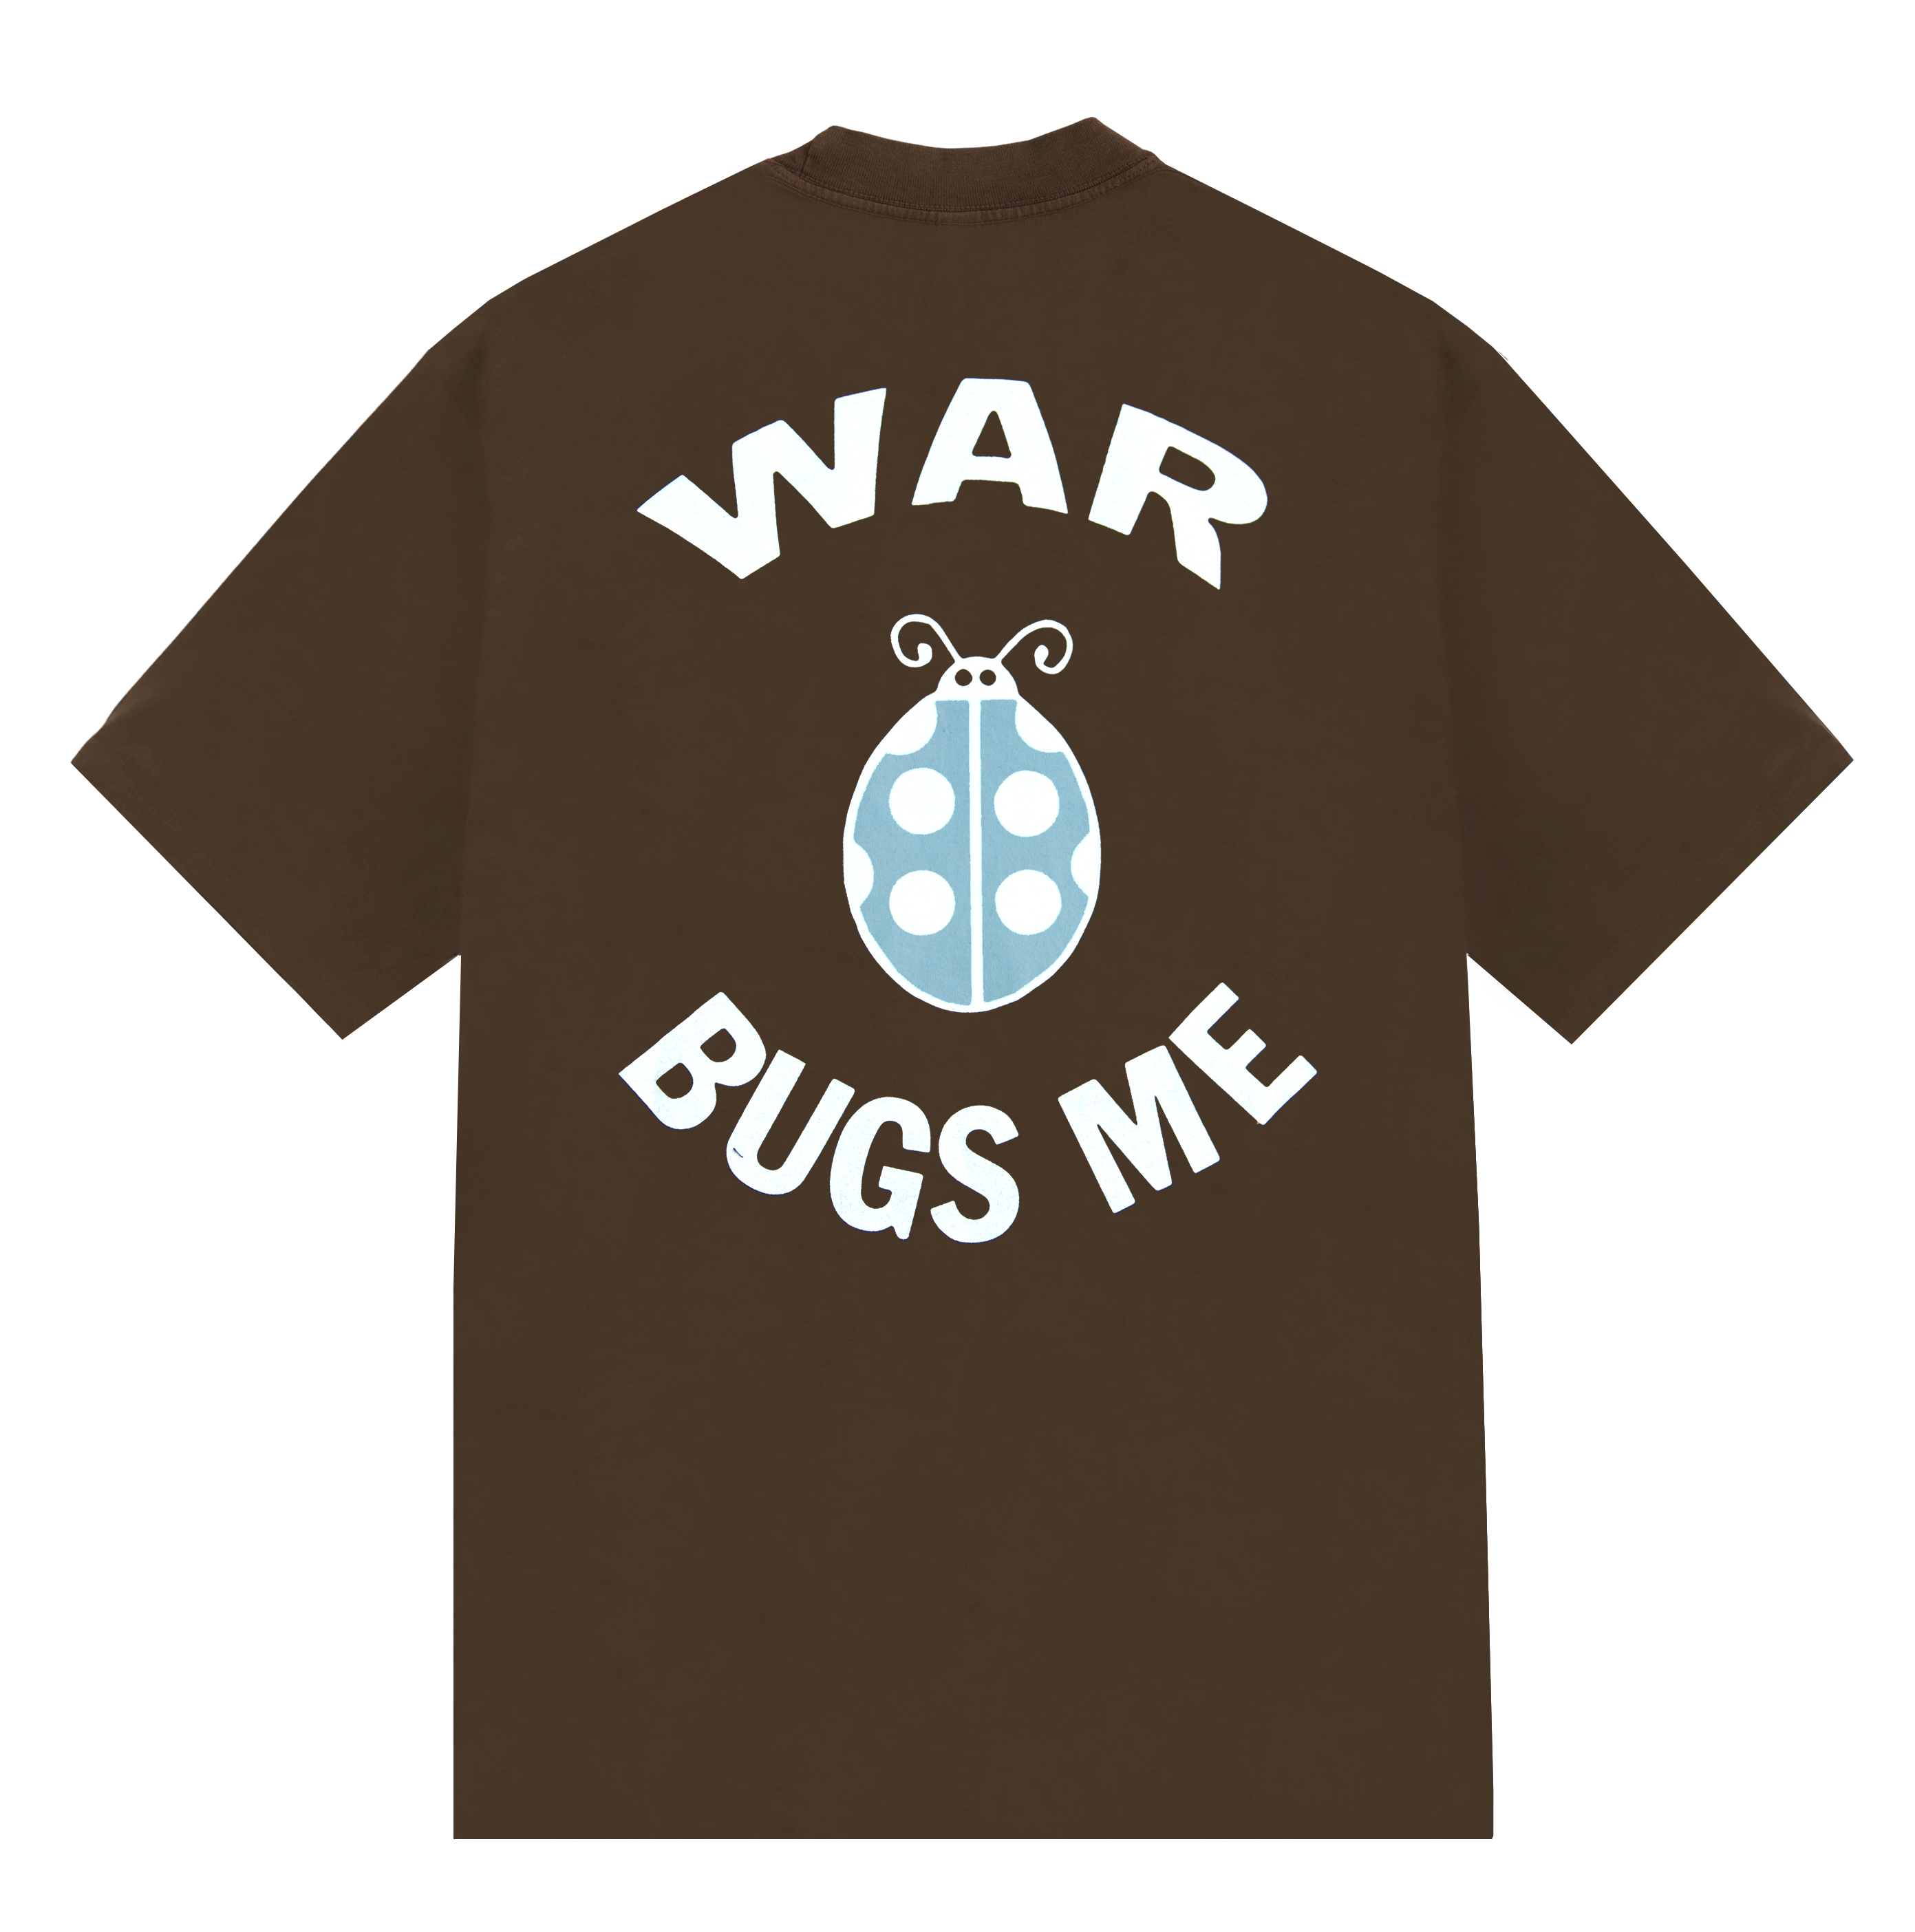 war bugs me - War Bugs Me - Logo Tee - Brown